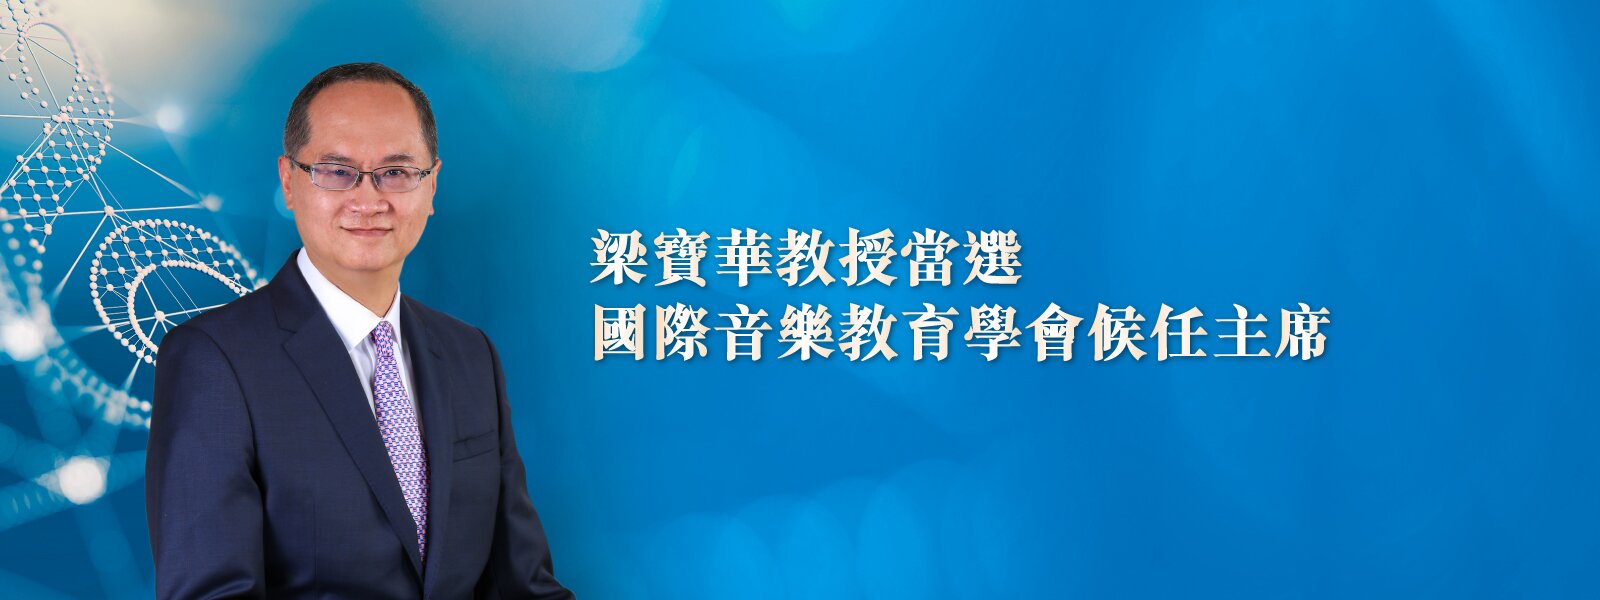 梁寶華教授當選國際音樂教育學會候任主席